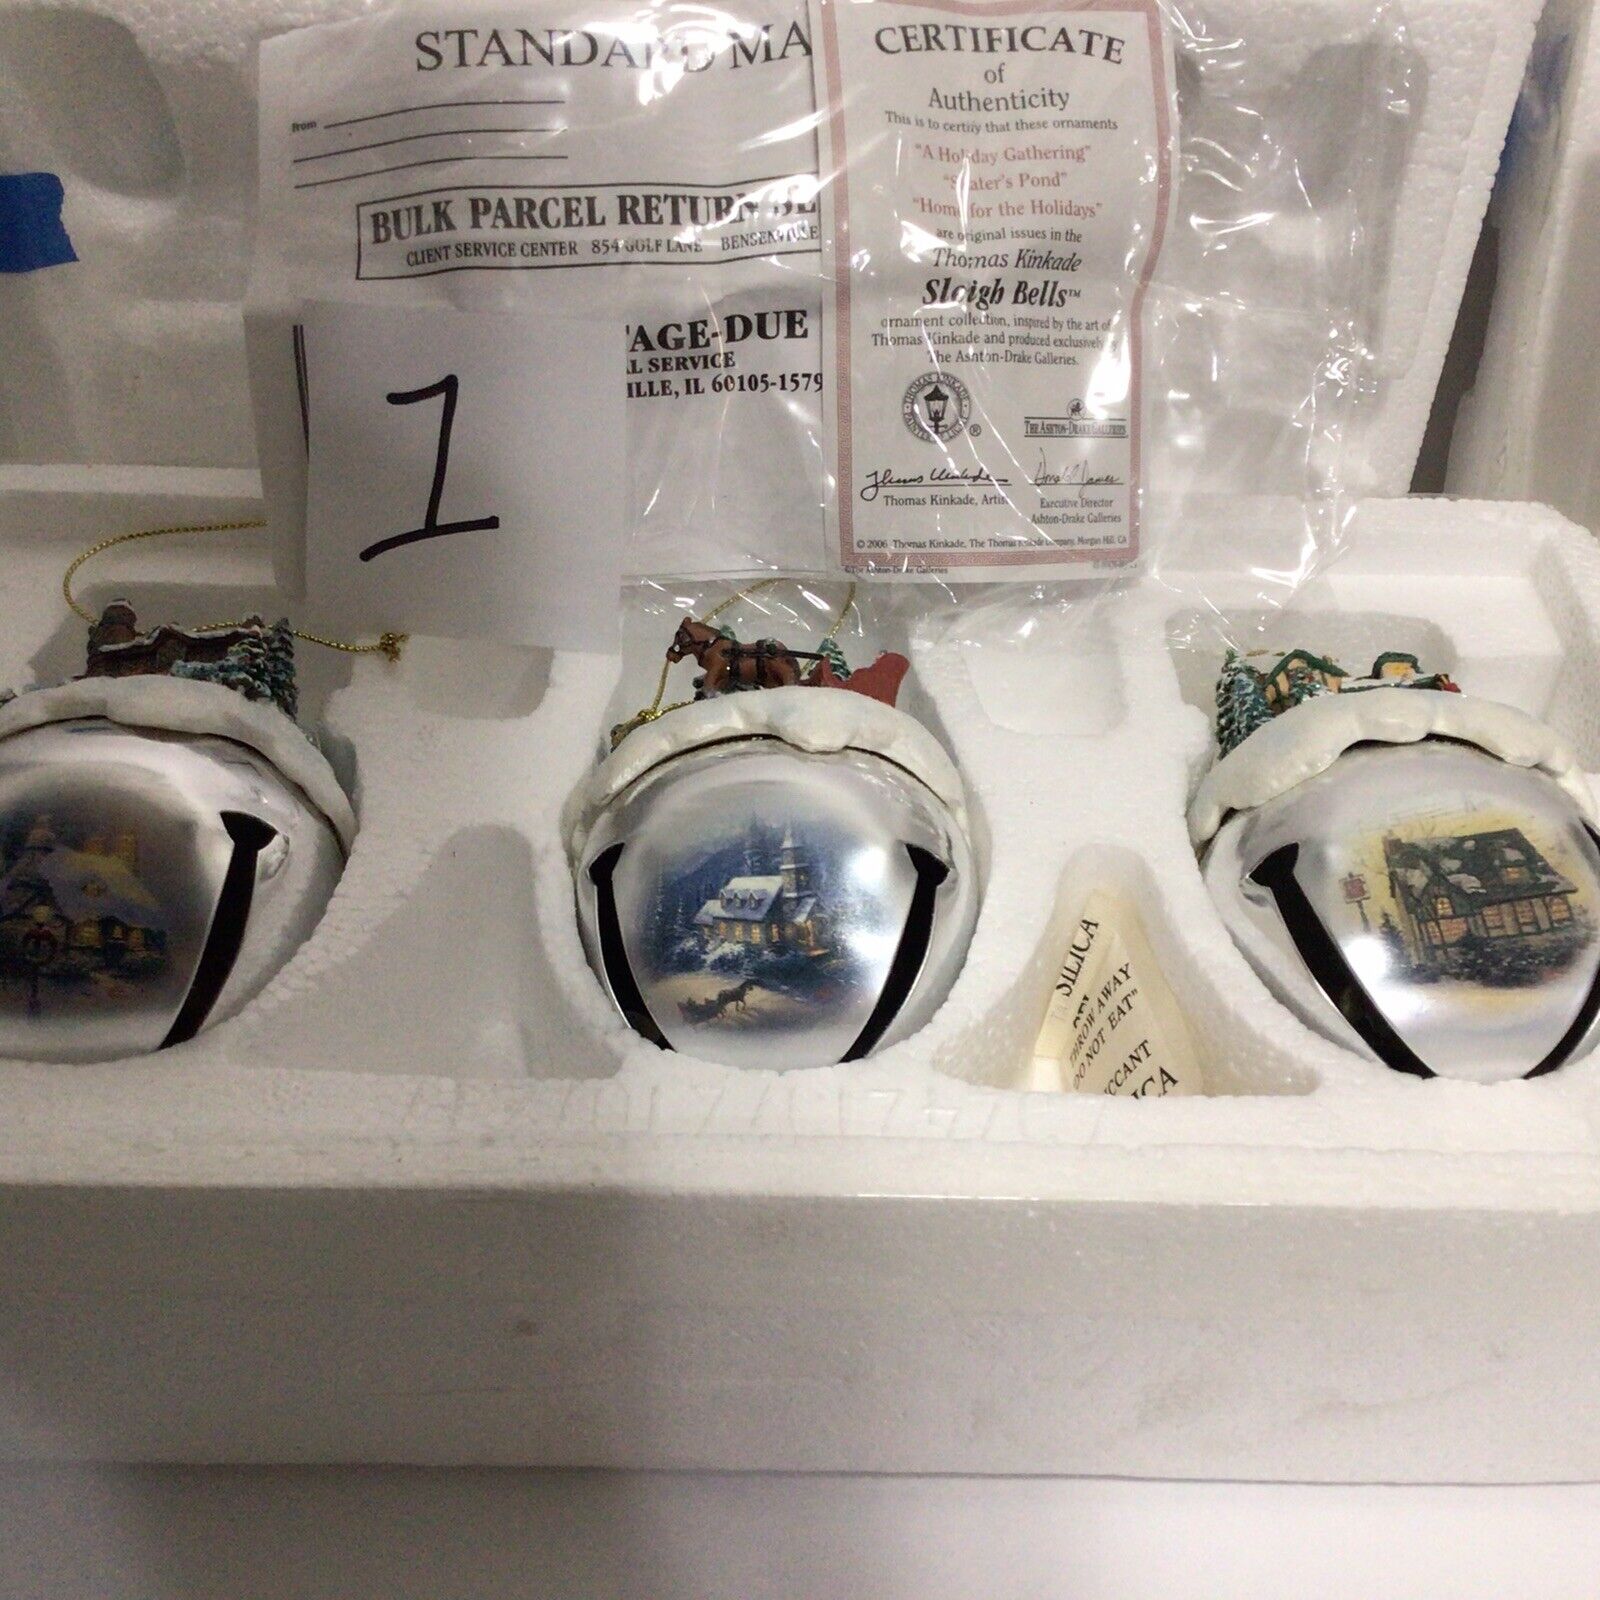 6 Thomas Kinkaid Sleigh Bells Ornaments, Ashton DrakeCOAs,Not Displayed, Sets1&2